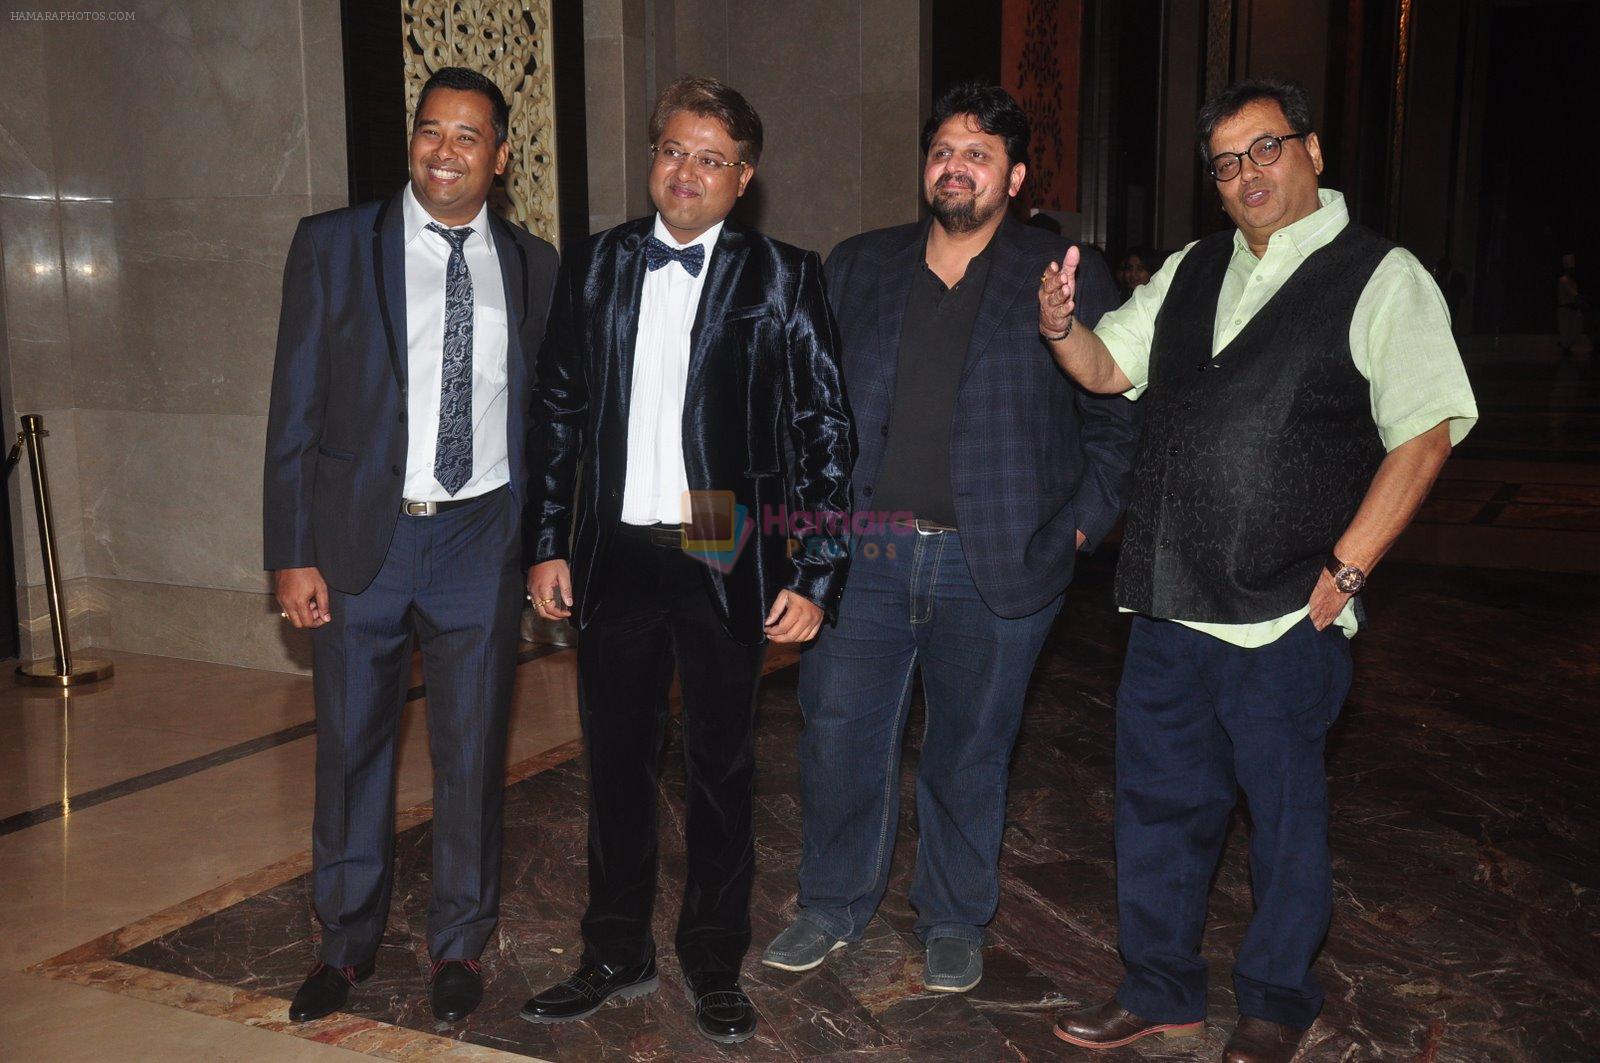 Subhash Ghai at the Pride of India awards in Mumbai on 16th Dec 2014